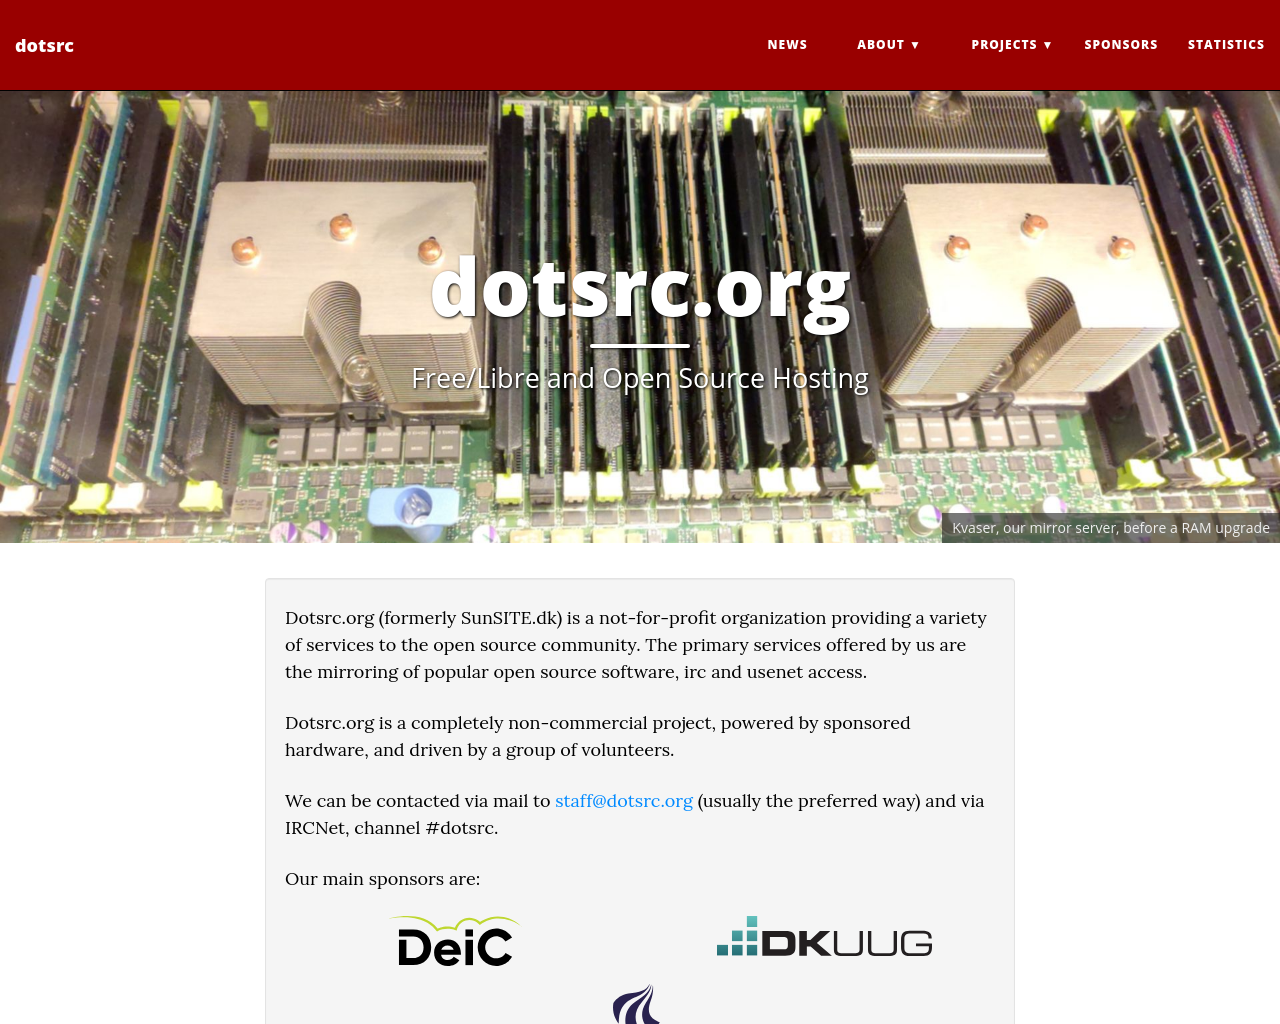 dotsrc.org